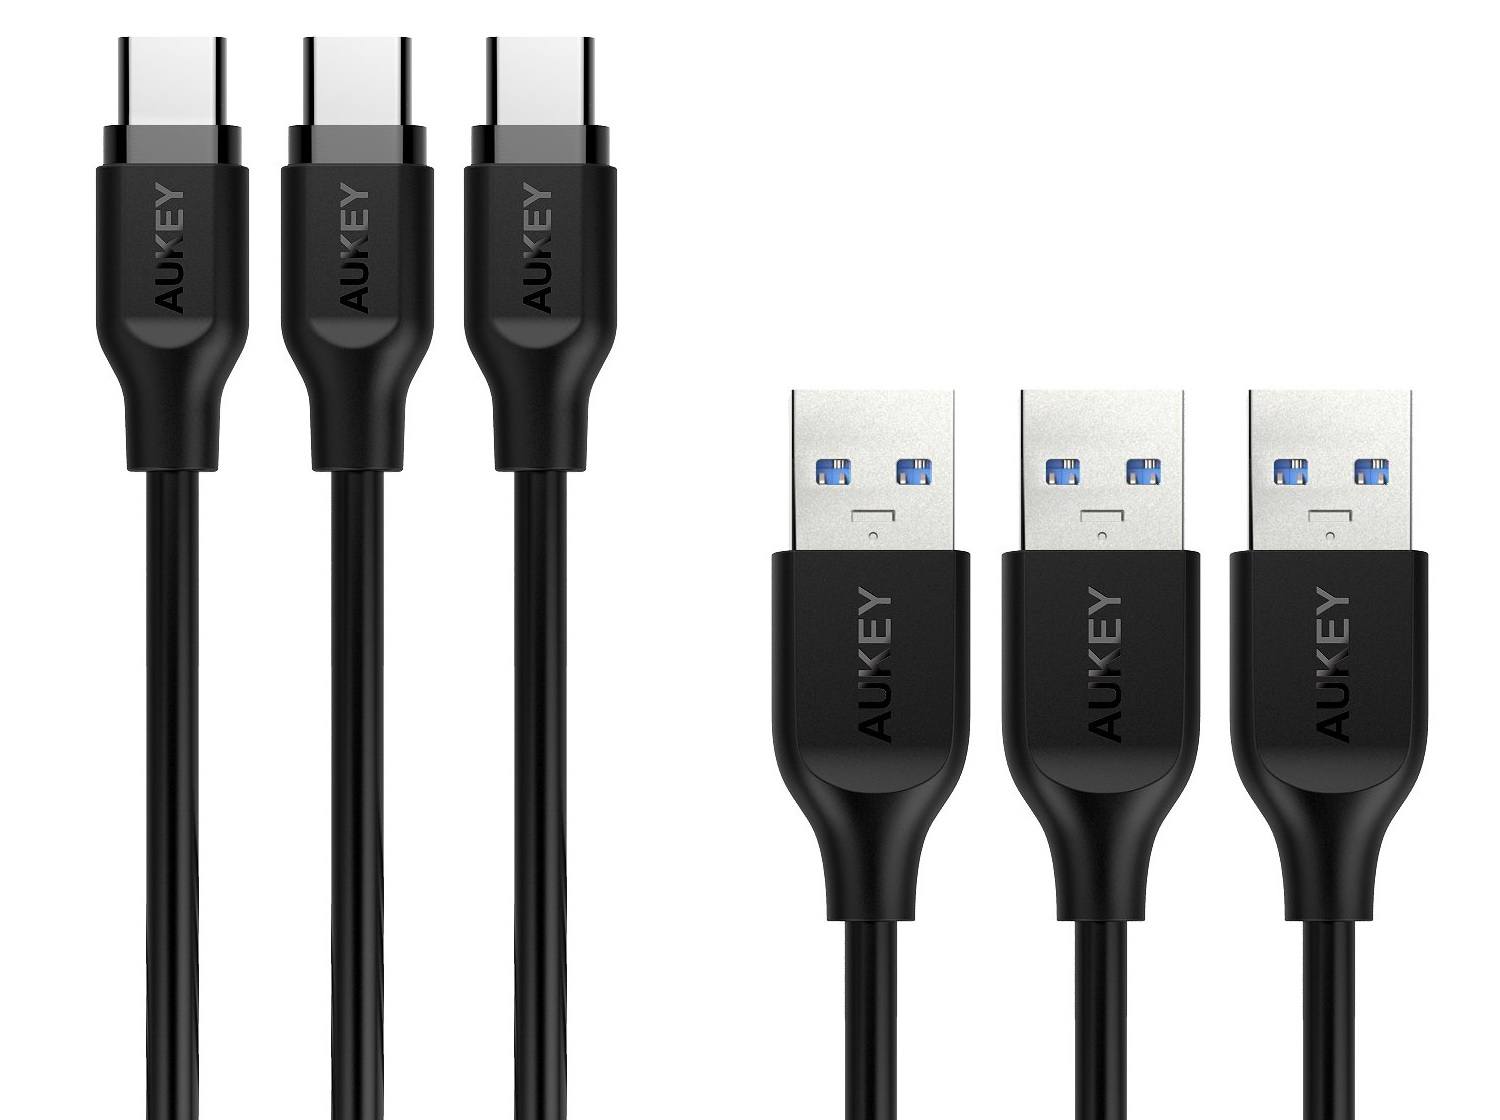 Deals: Drei Aukey USB-C Kabel für günstige 5,99 Euro